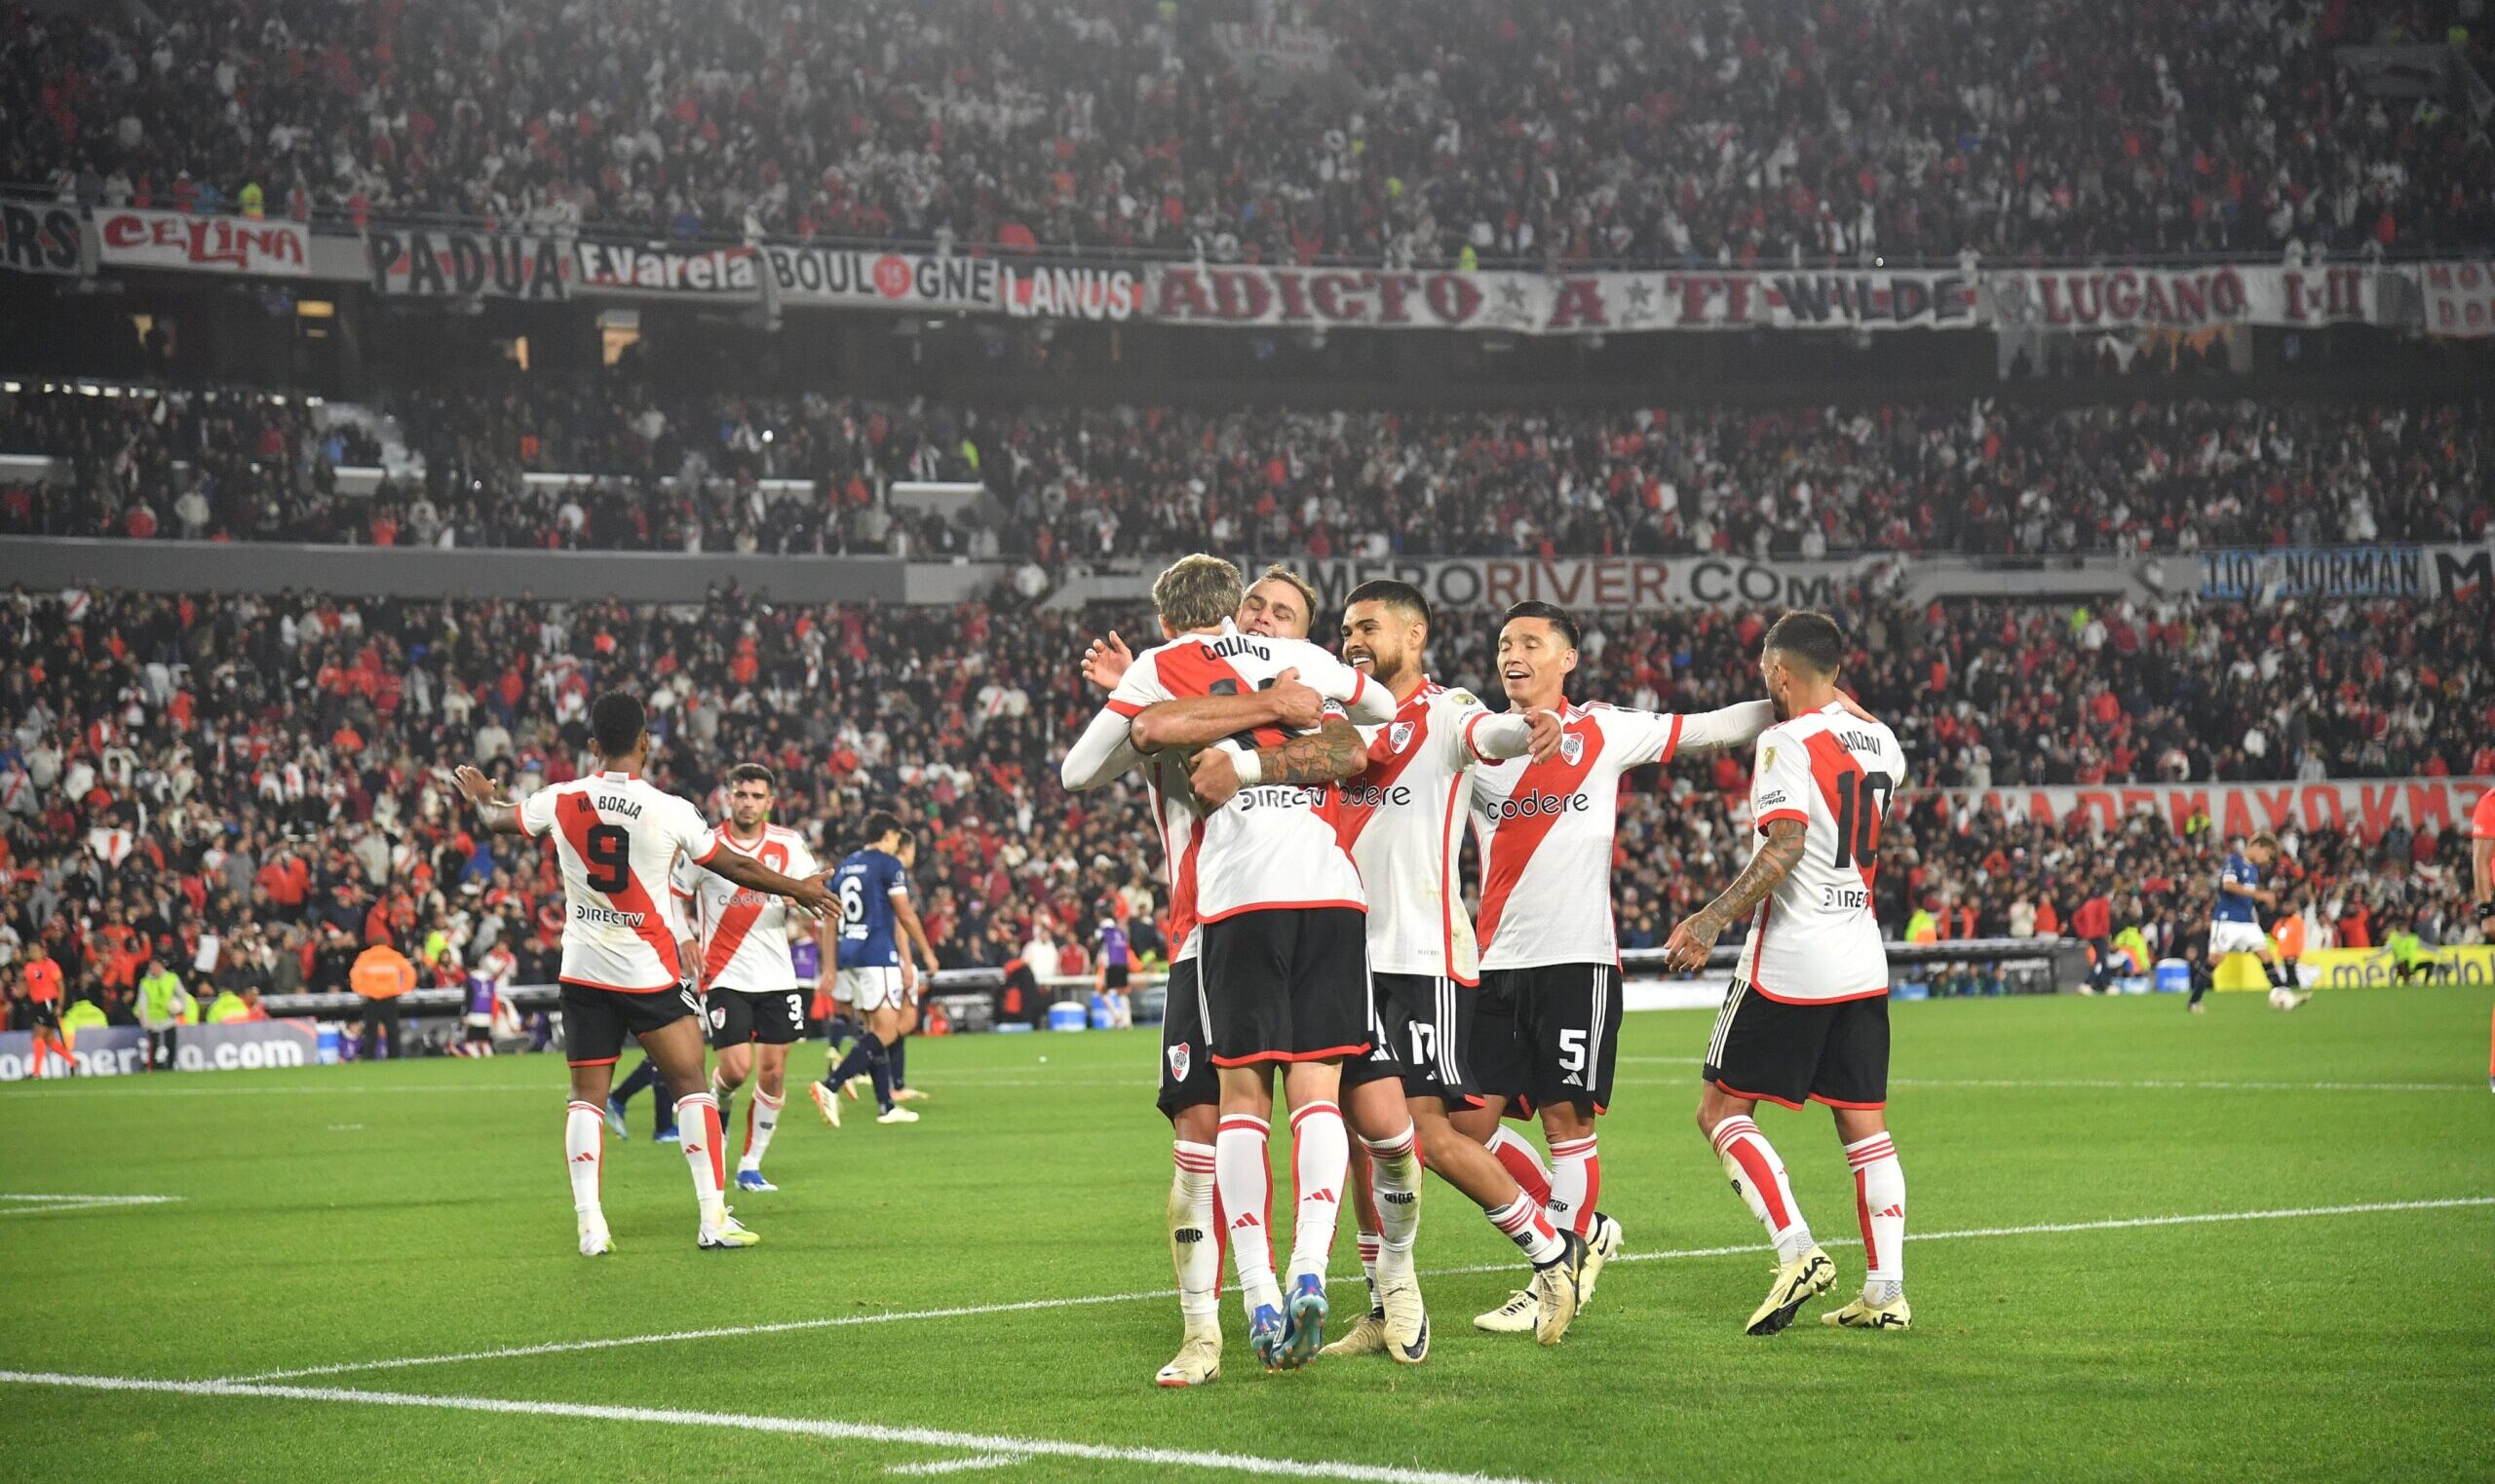 Post derrota en el Superclásico, River Plate se mentaliza en su duelo ante Libertad